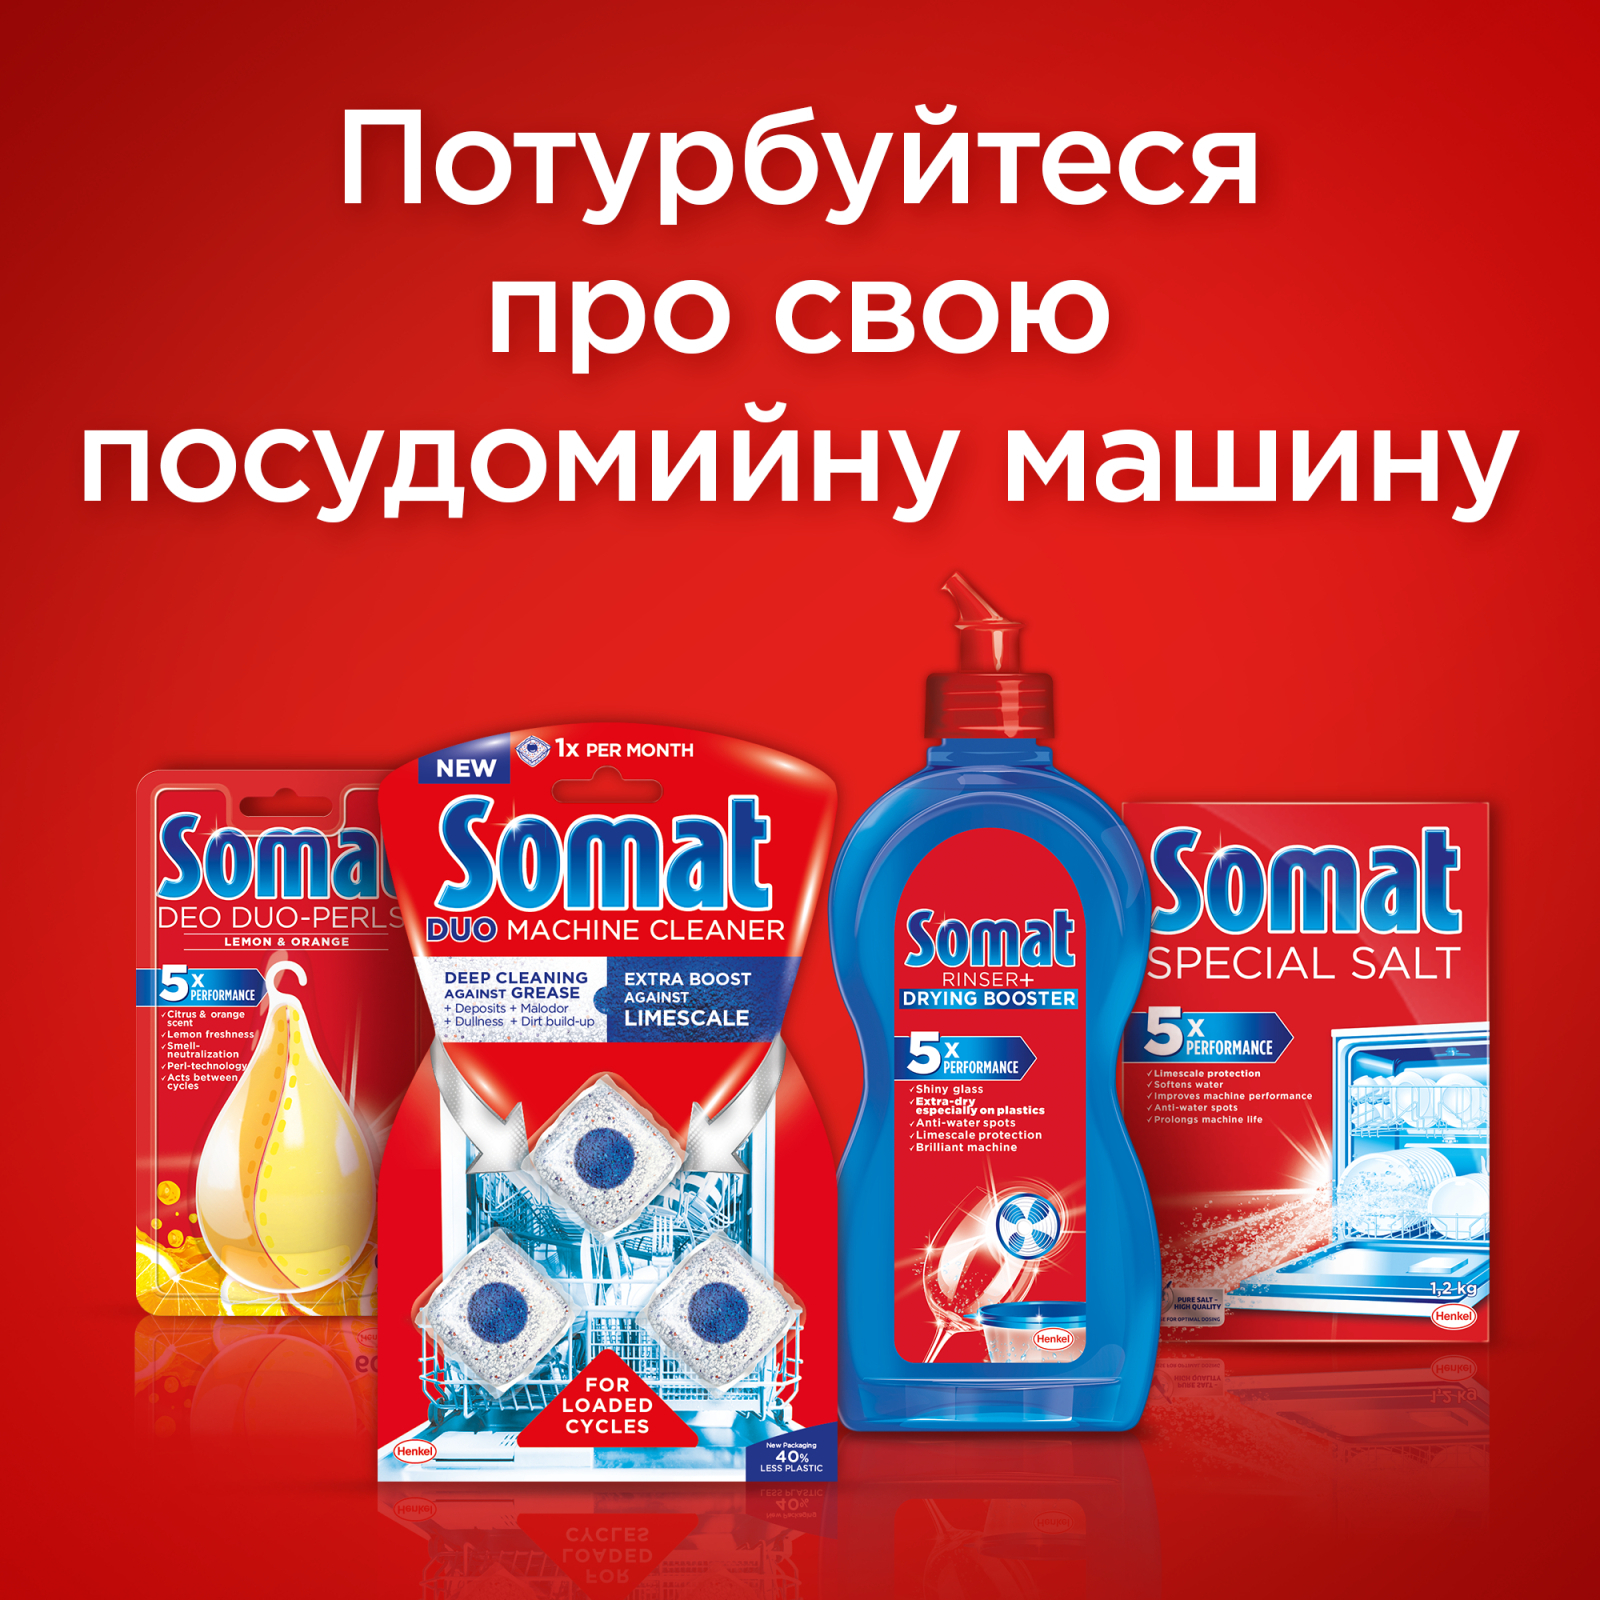 Таблетки для посудомоечных машин Somat All in 1 24 шт. (9000101347777) изображение 9